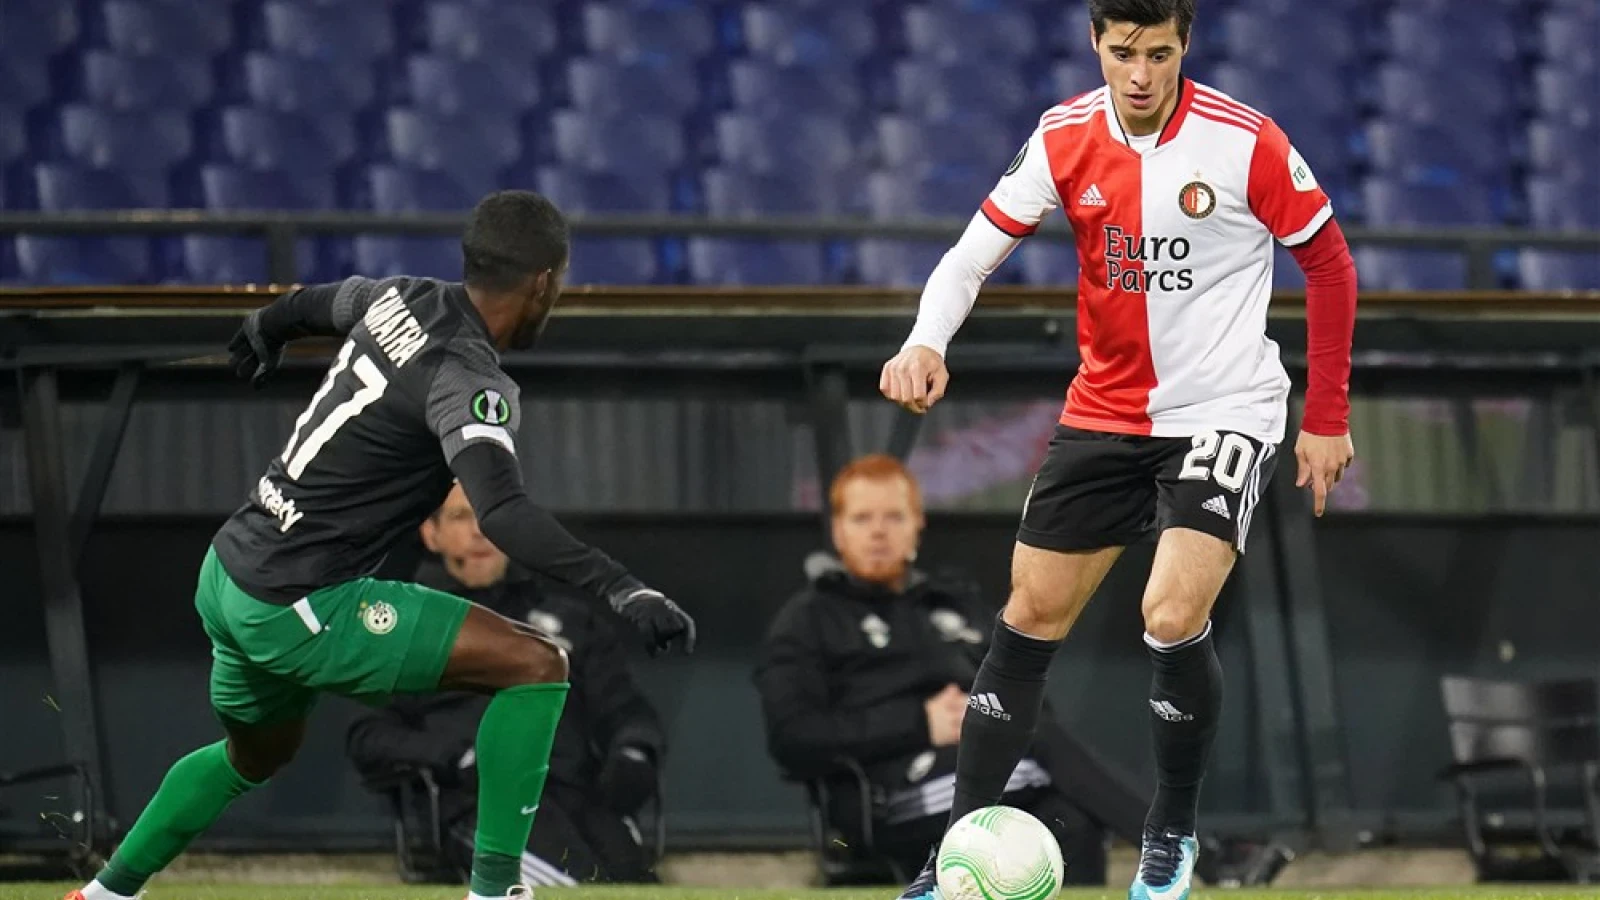 LIVE | Feyenoord - Maccabi Haifa 2-1 | Einde wedstrijd